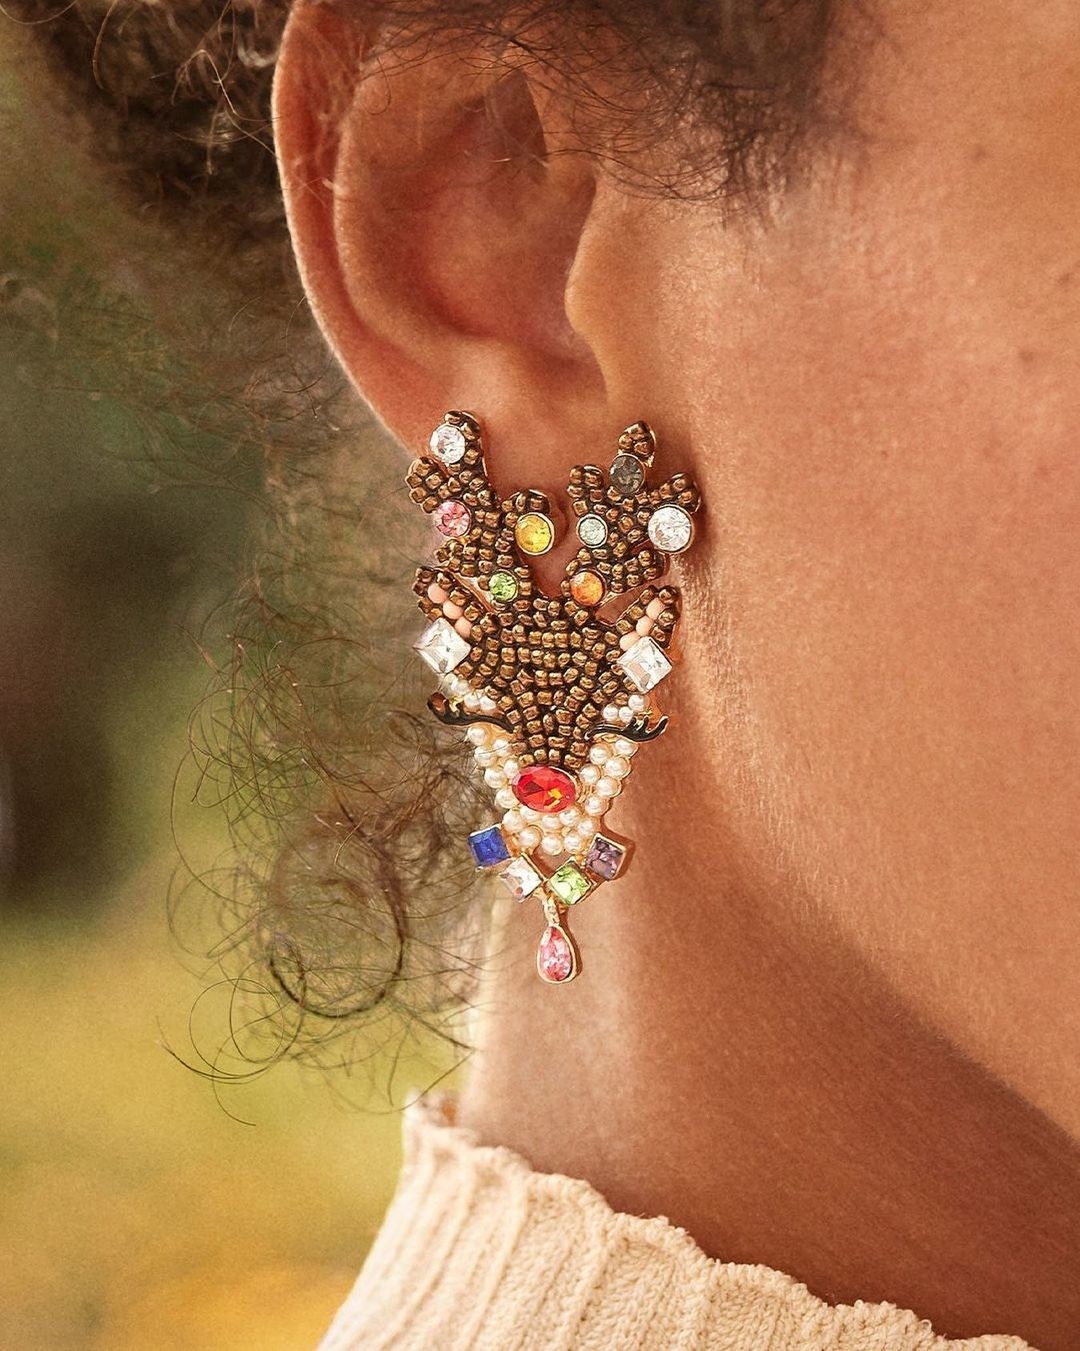 model wearing the reindeer-inspired earrings